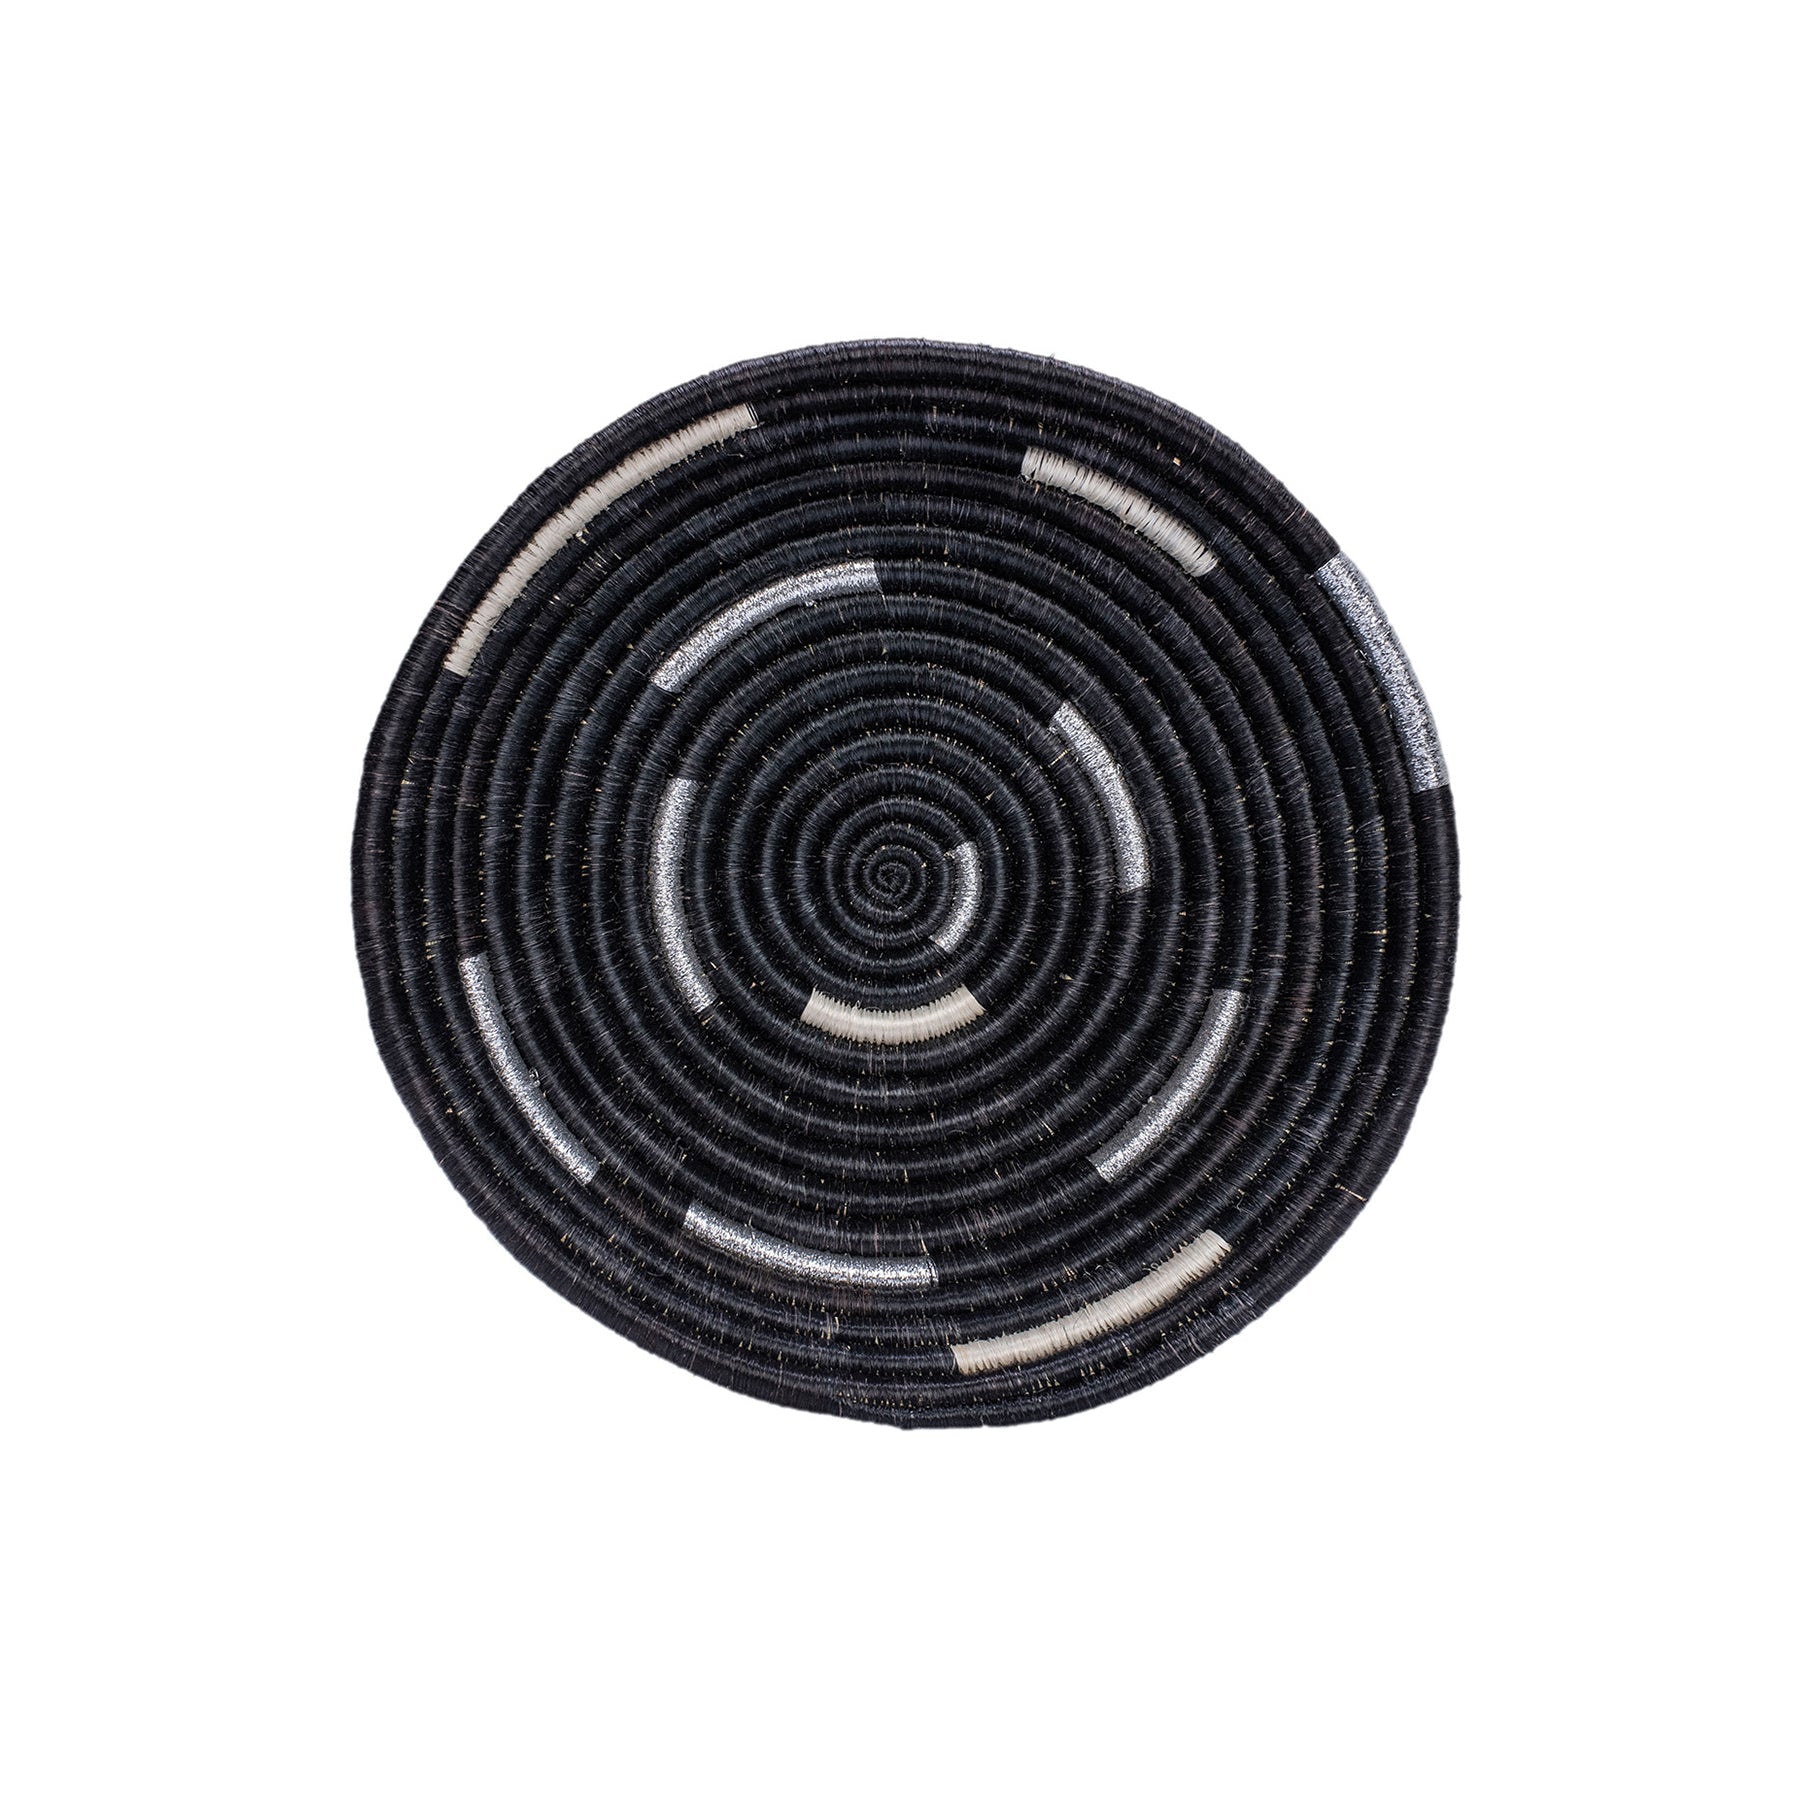 10" Medium Silver Black Spiral Round Basket